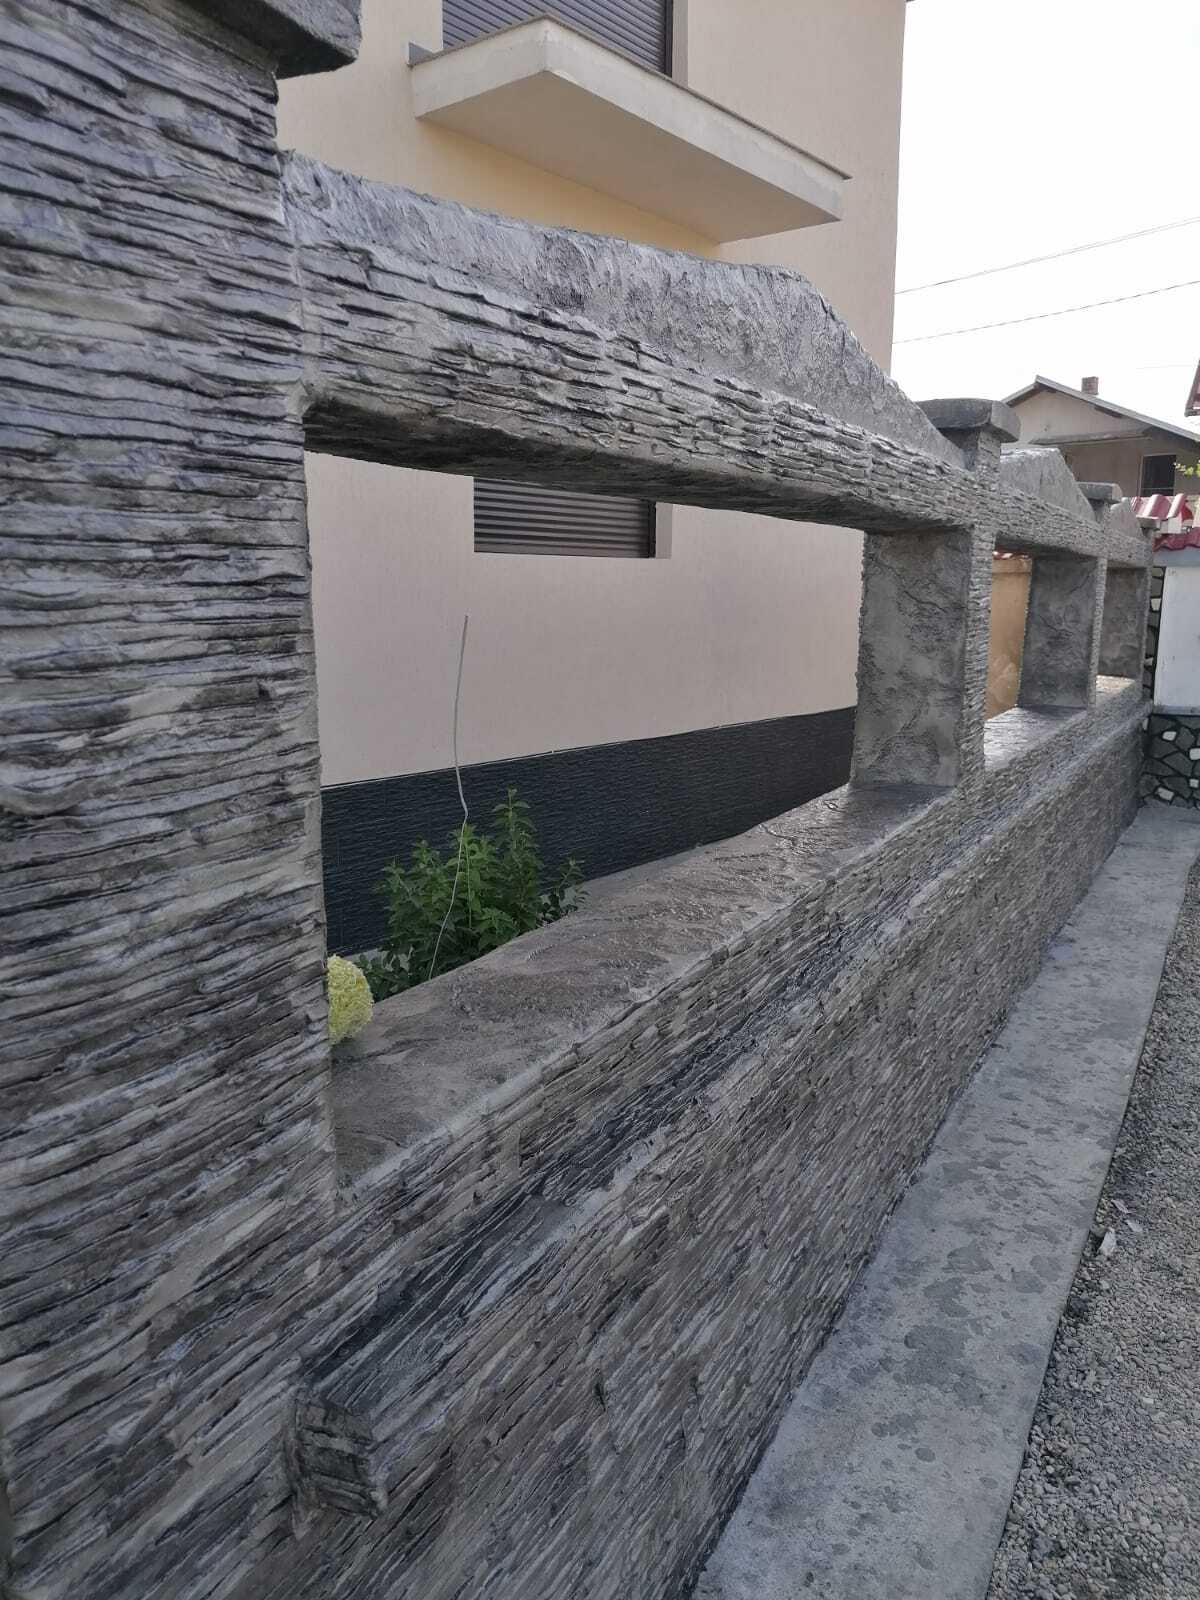 fasada domu z pionowym betonem drukowanym naśladującym kamień